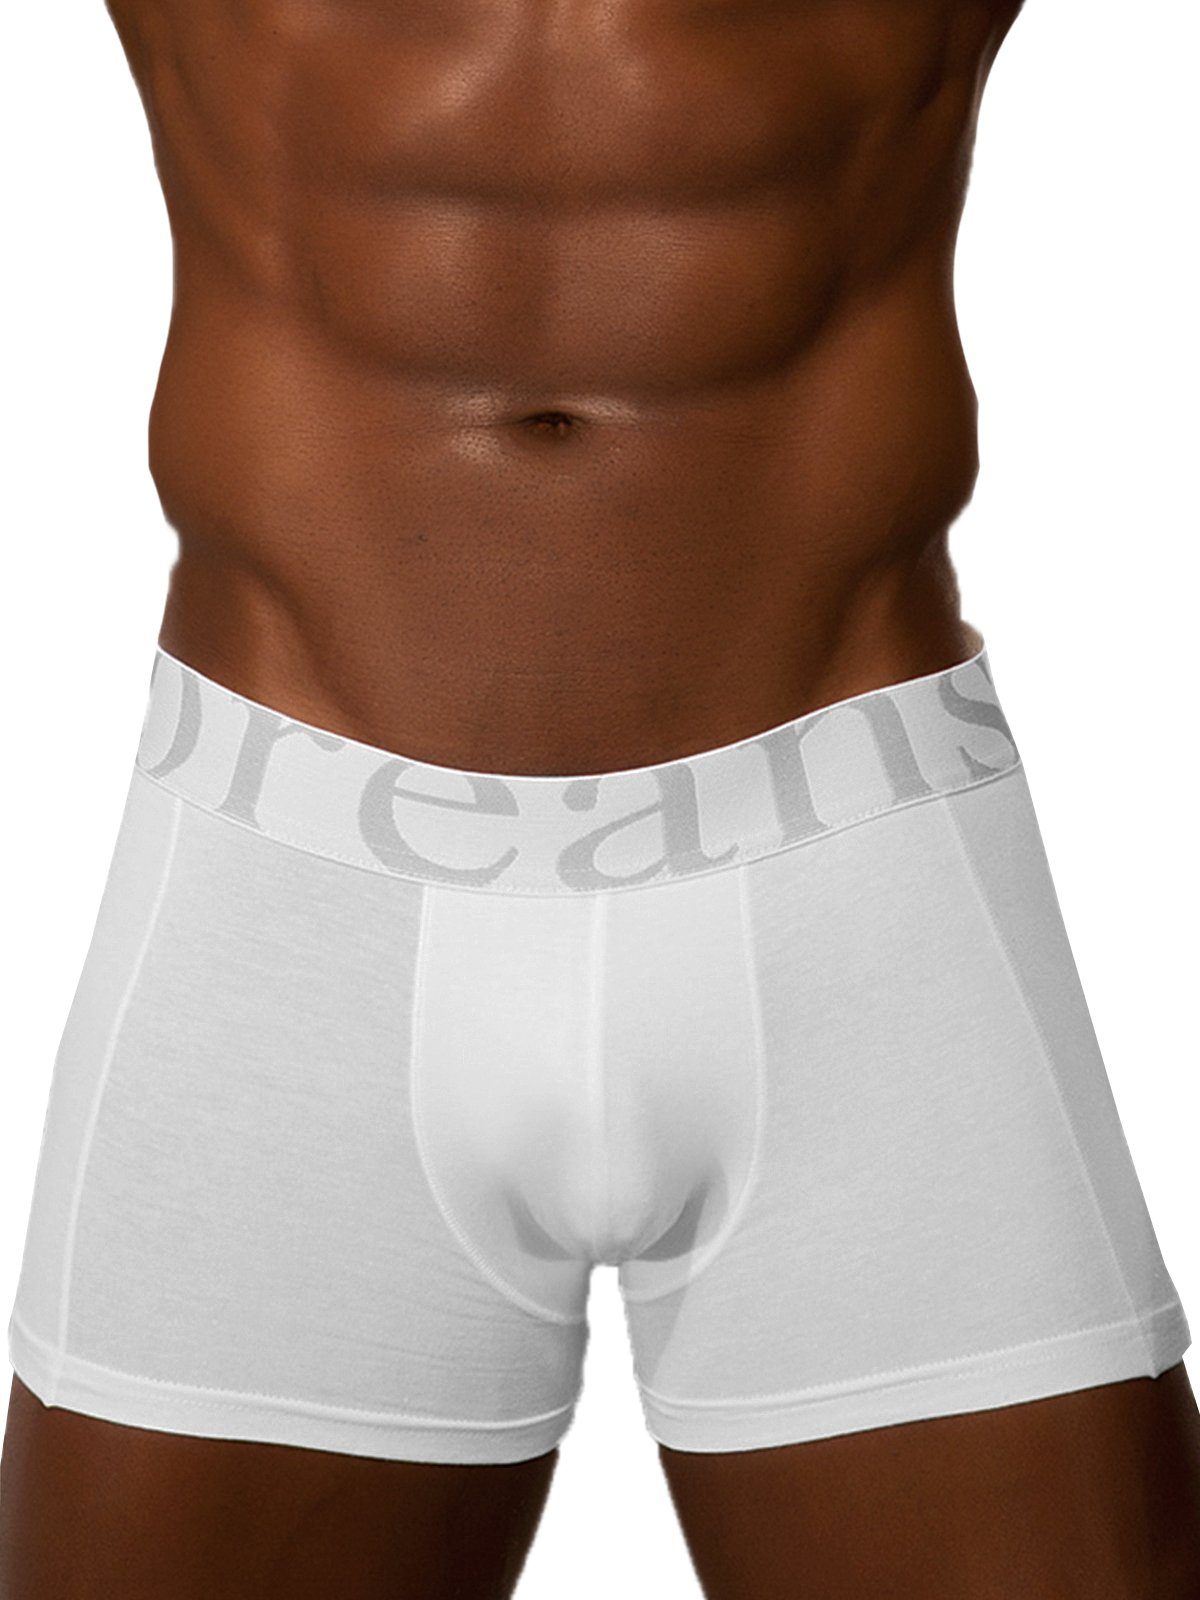 Herren Männer Pants Doreanse Weiß Boxershorts DA1777 Boxer hochwertige Underwear Hipster